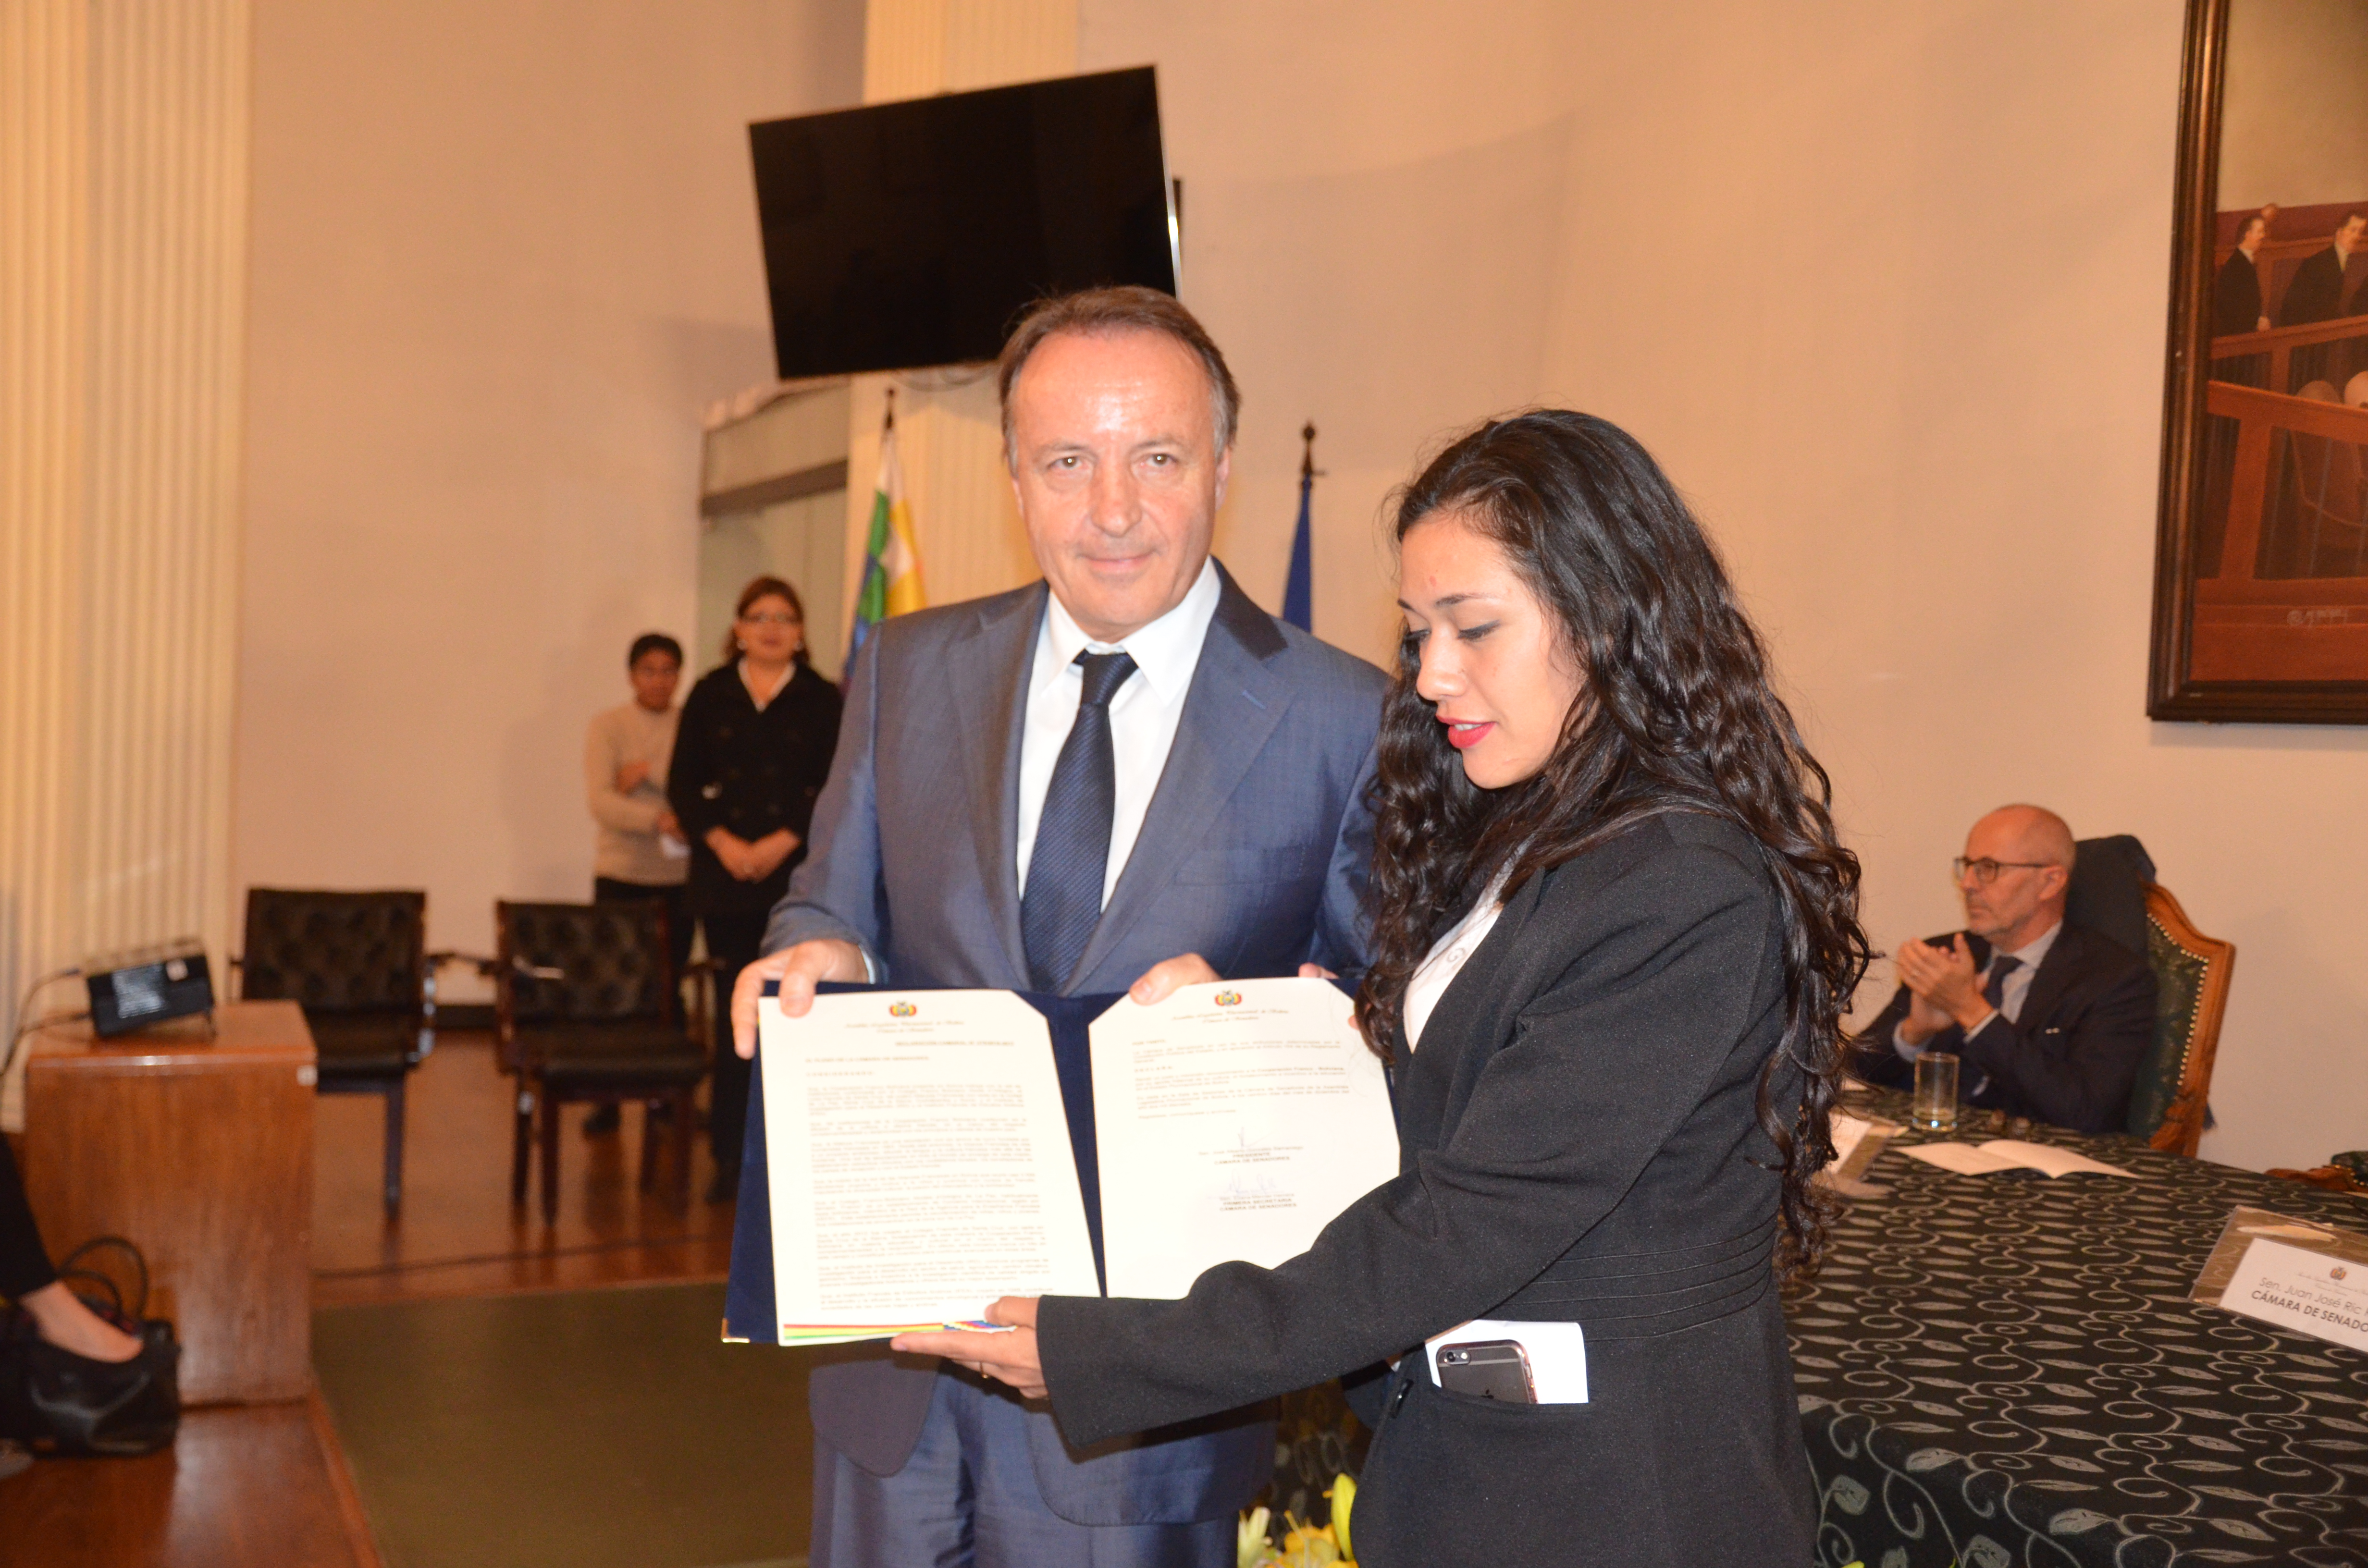 Senado entrega reconocimiento a la “Cooperación Franco – Boliviana” por su aporte y cooperación a la educación